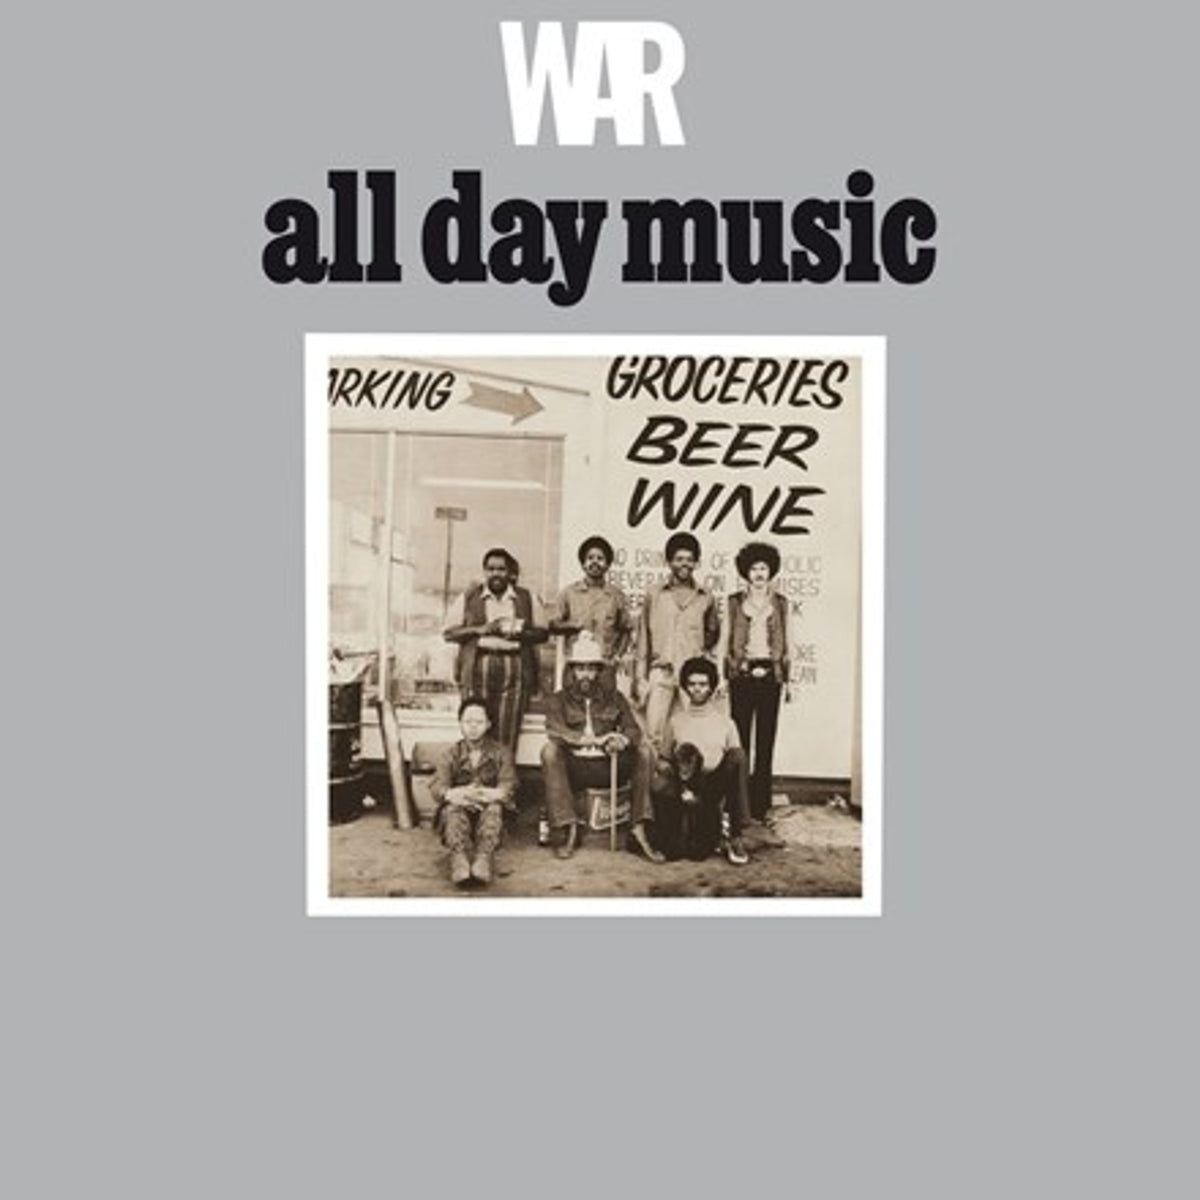 War All Day Music LP – Eroding Winds